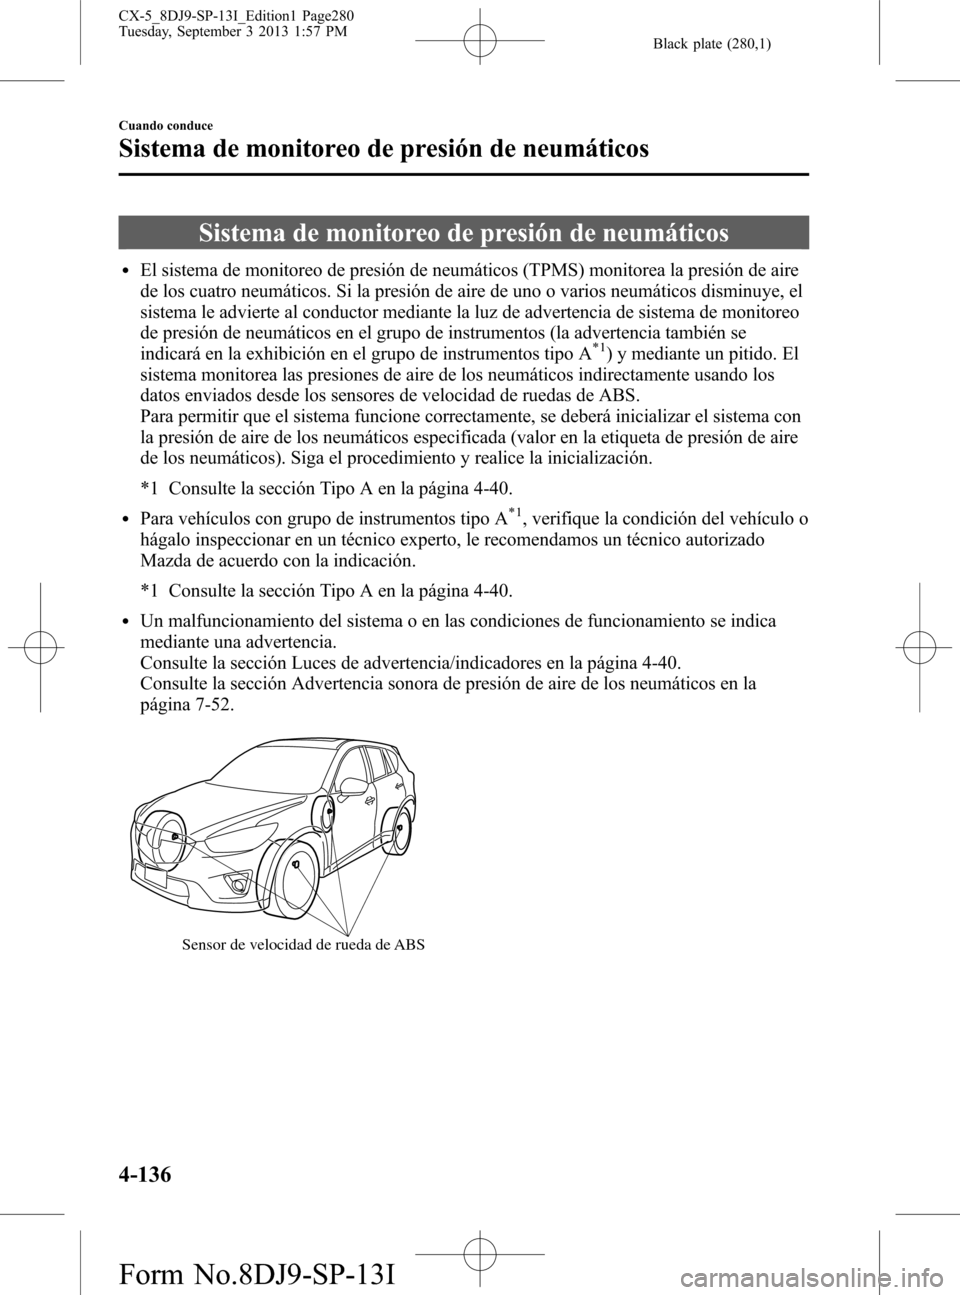 MAZDA MODEL CX-5 2014  Manual del propietario (in Spanish) Black plate (280,1)
Sistema de monitoreo de presión de neumáticos
lEl sistema de monitoreo de presión de neumáticos (TPMS) monitorea la presión de aire
de los cuatro neumáticos. Si la presión d